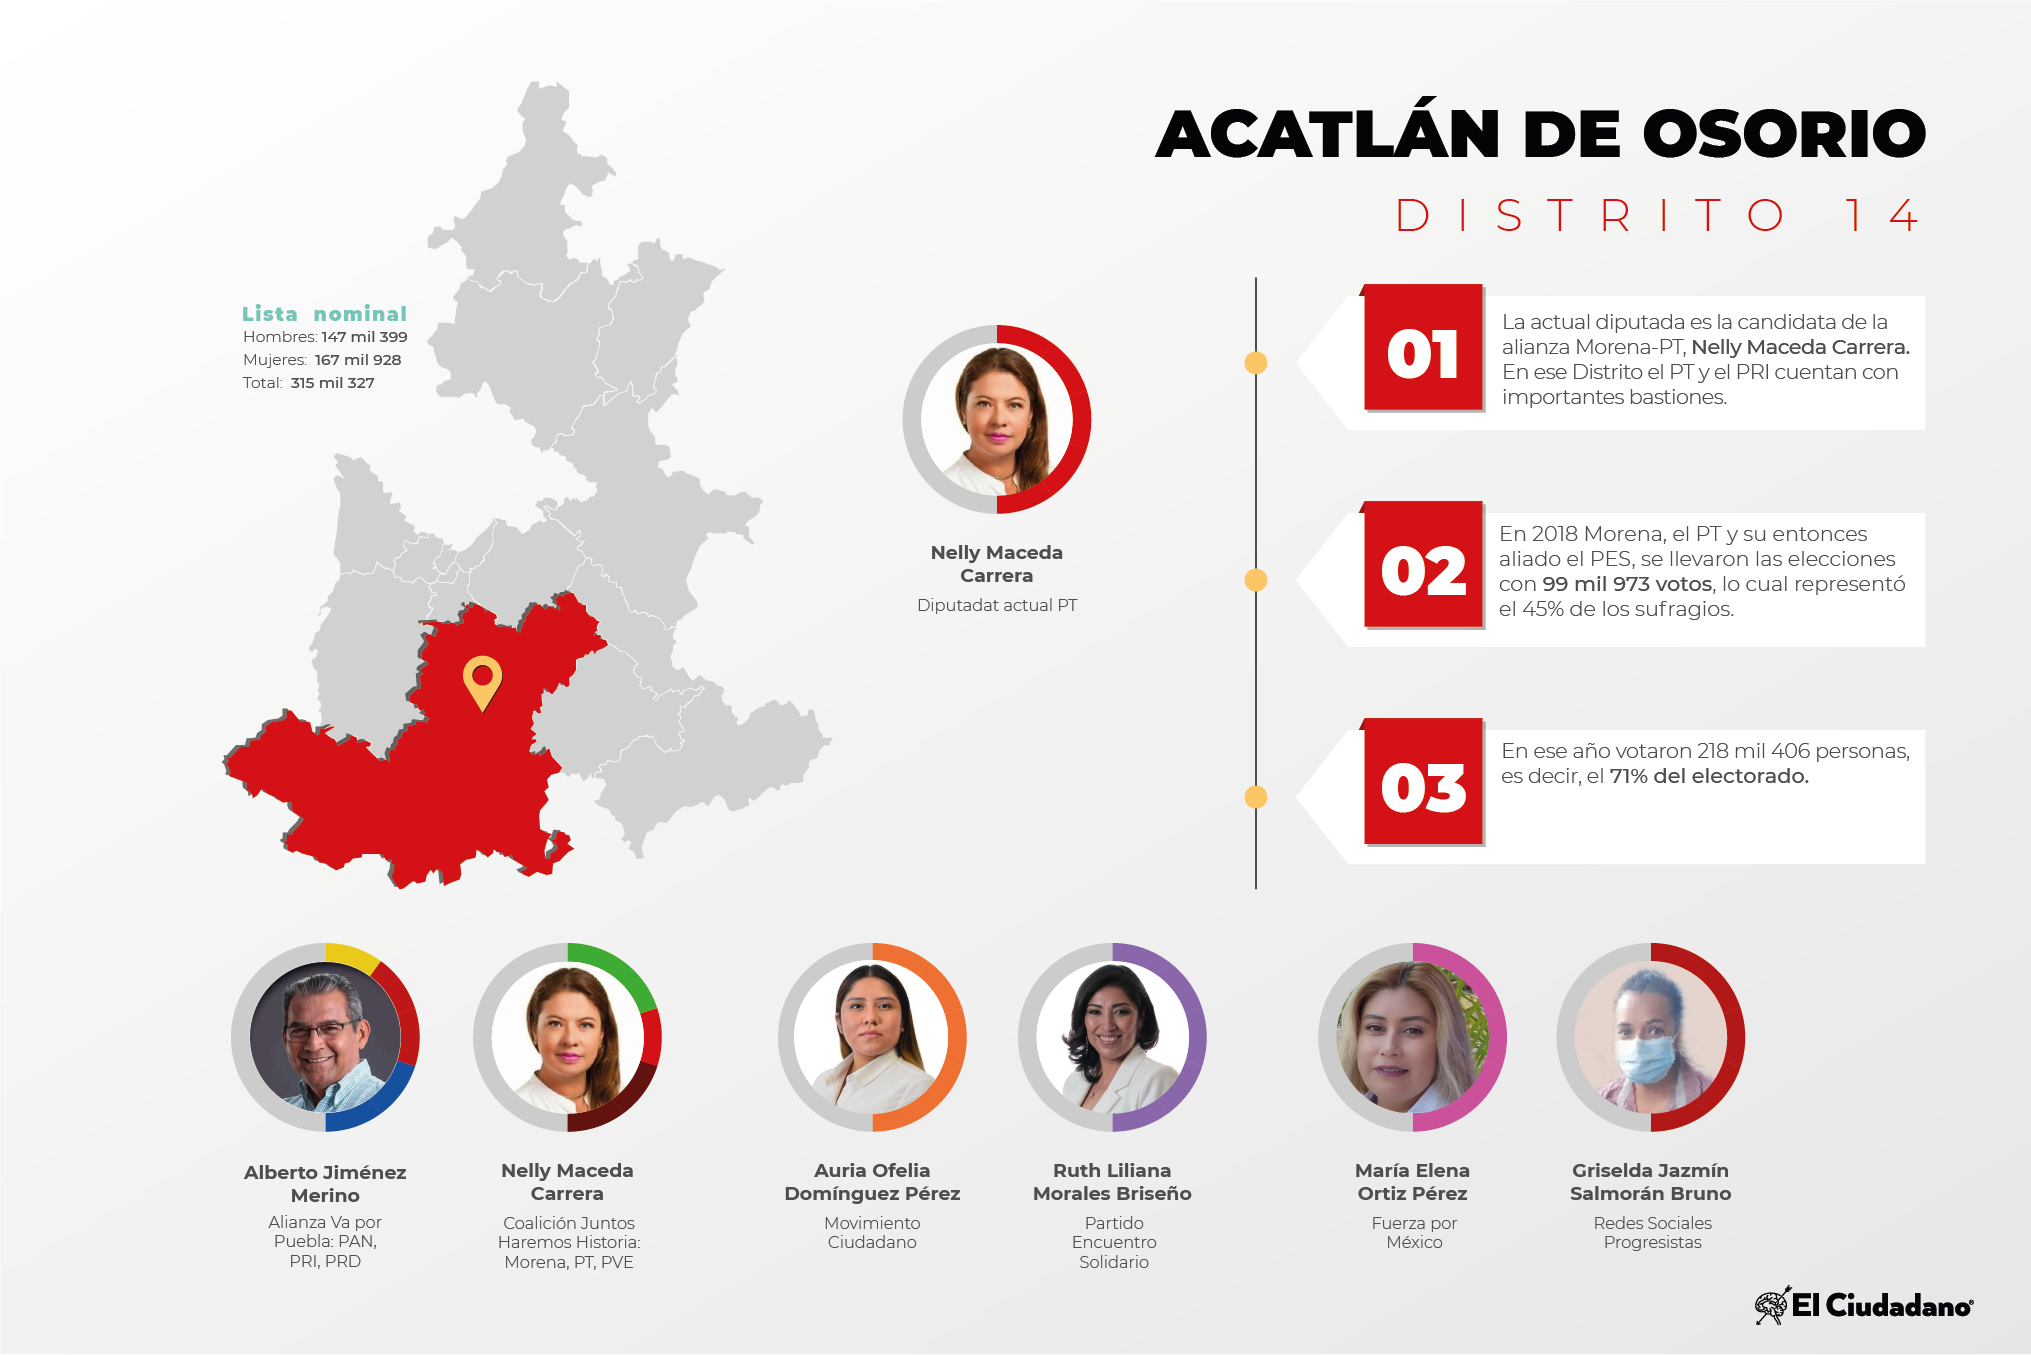 Radiografía de distritos electorales federales: Distrito 14, Acatlán